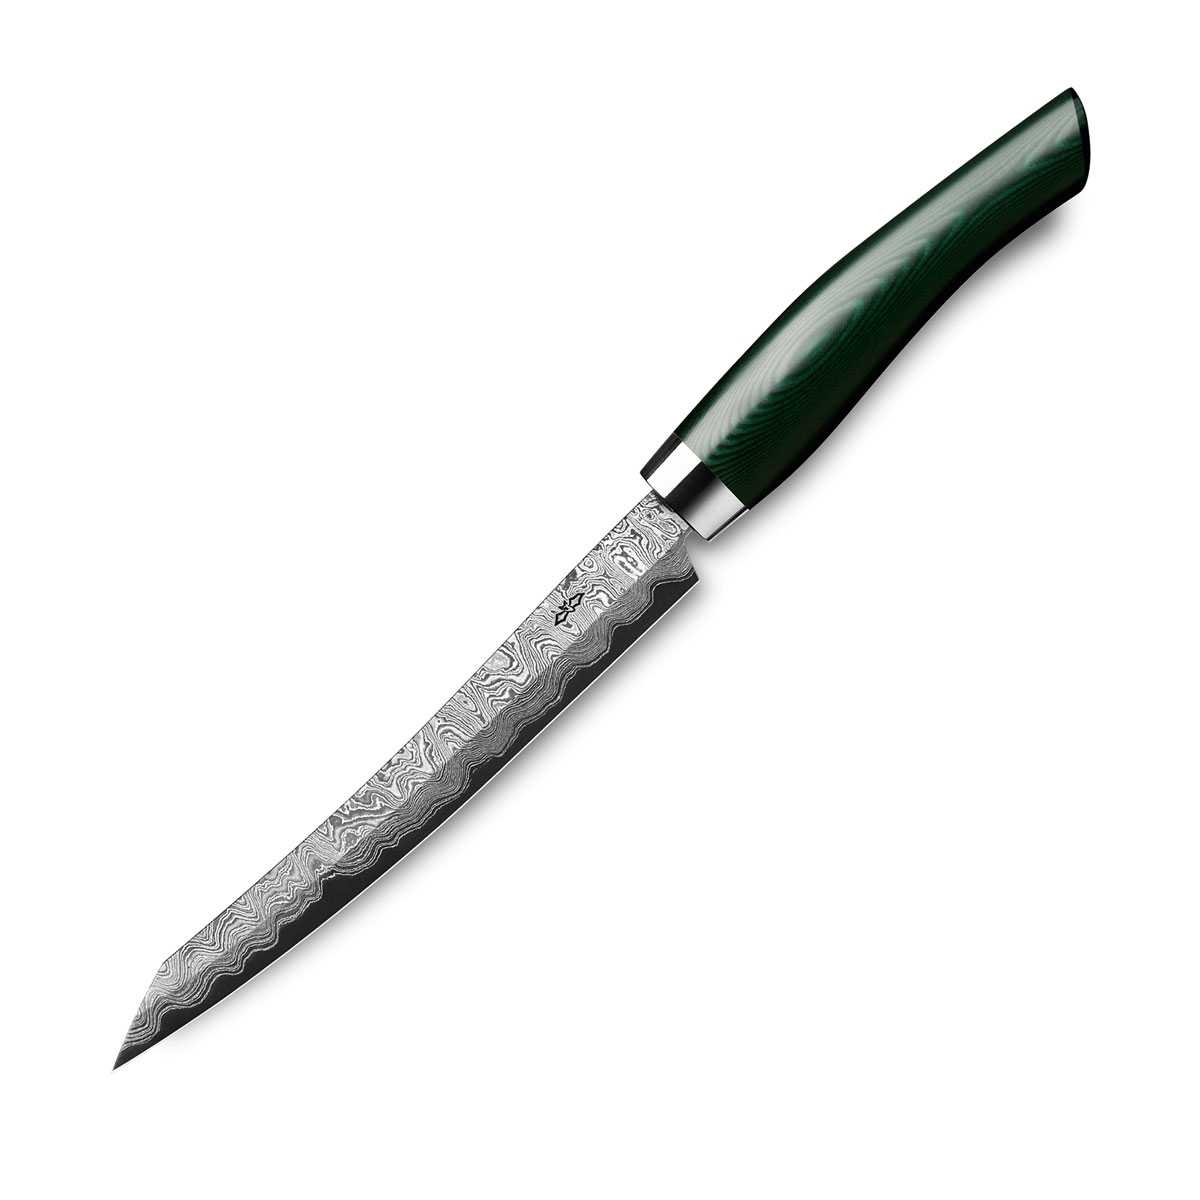 Nesmuk Exklusiv C150 Damast Slicer 16 cm mit Schneidlage / Griff aus grünem Micarta